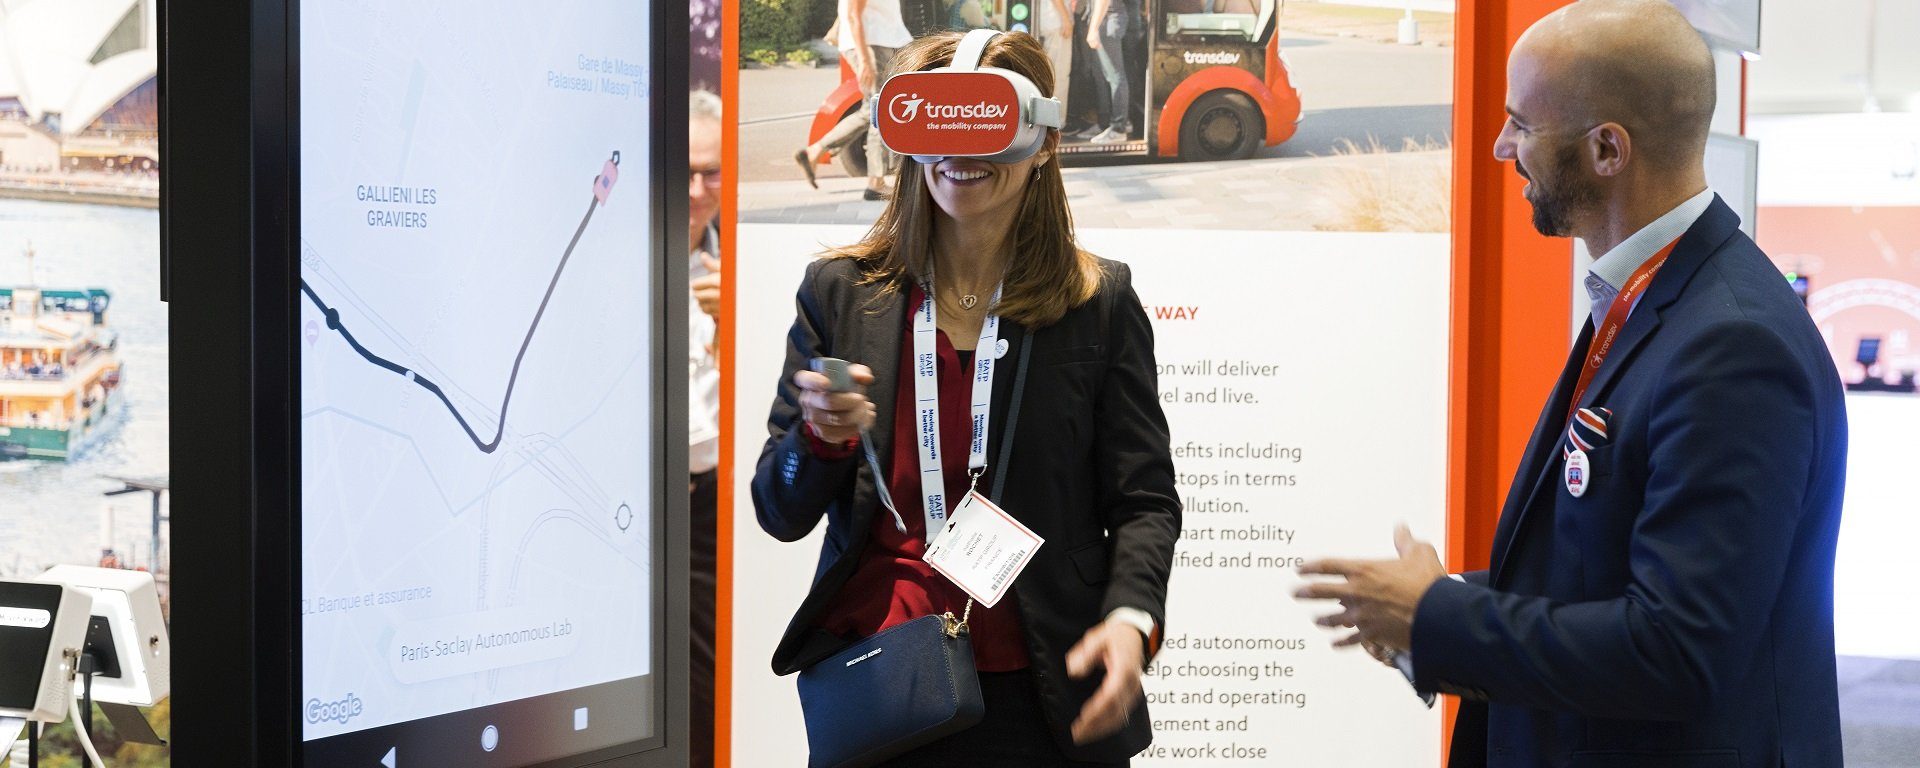 Transdev booth UITP 2019 Stockholm Stand salon animation casque réalité virtuelle mobilité